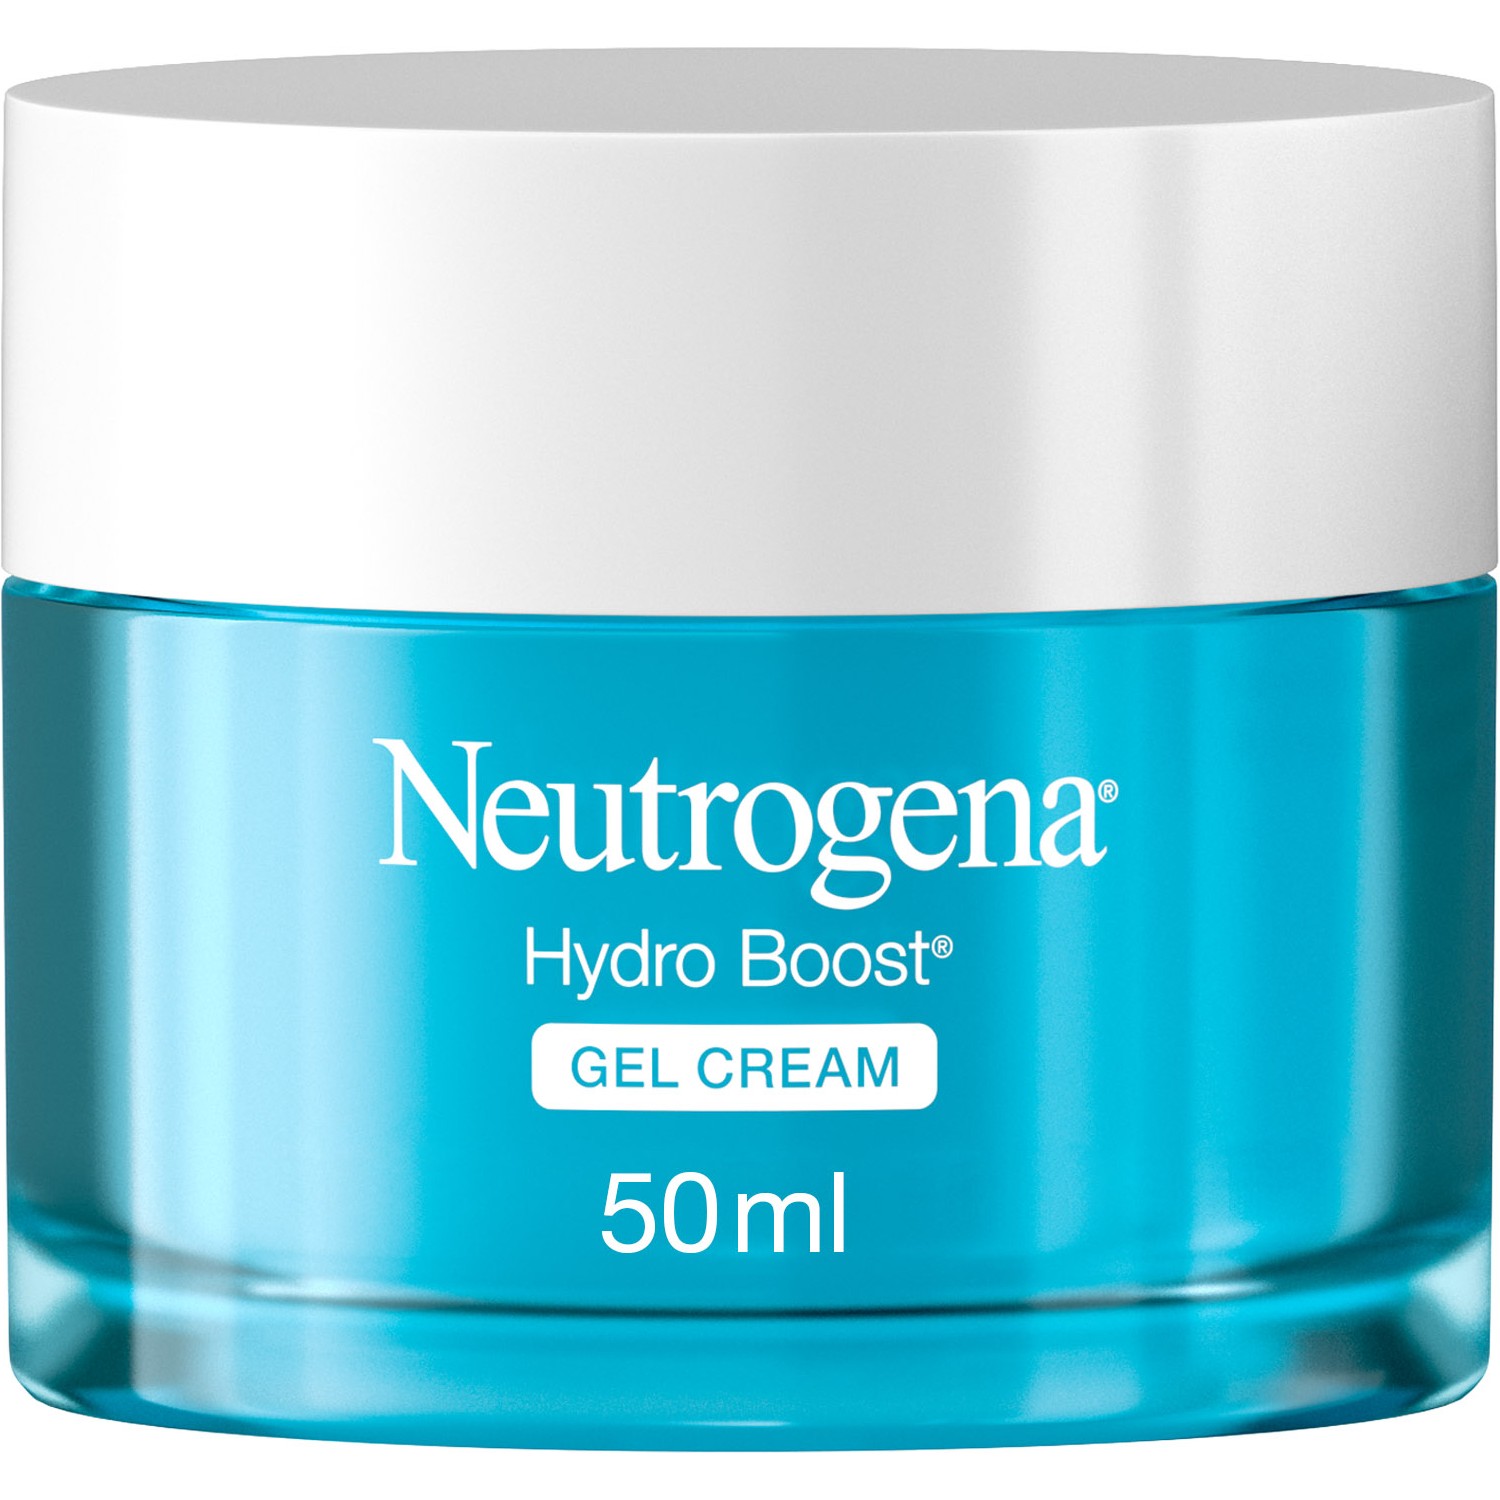 Крем-гель Neutrogena Hydro Boost увлажняющий для сухой кожи, 50 мл фото